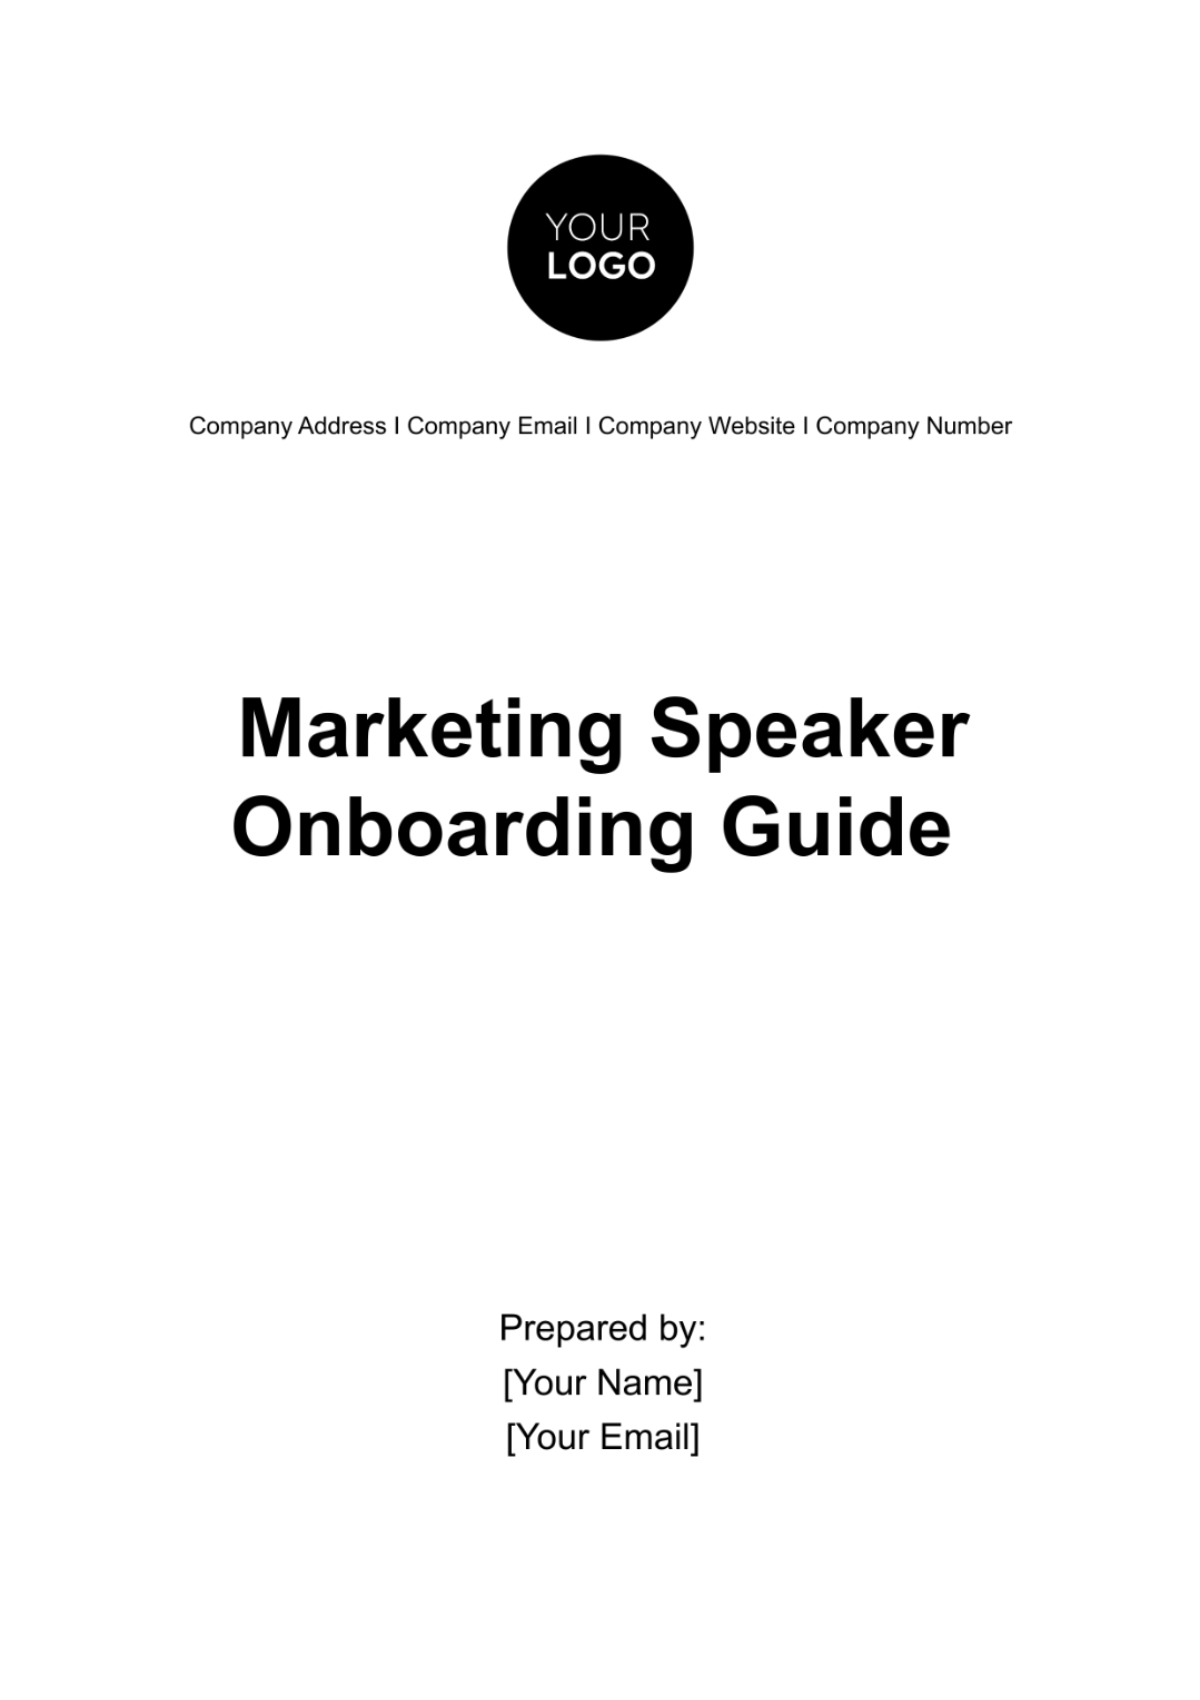 Marketing Speaker Onboarding Guide Template